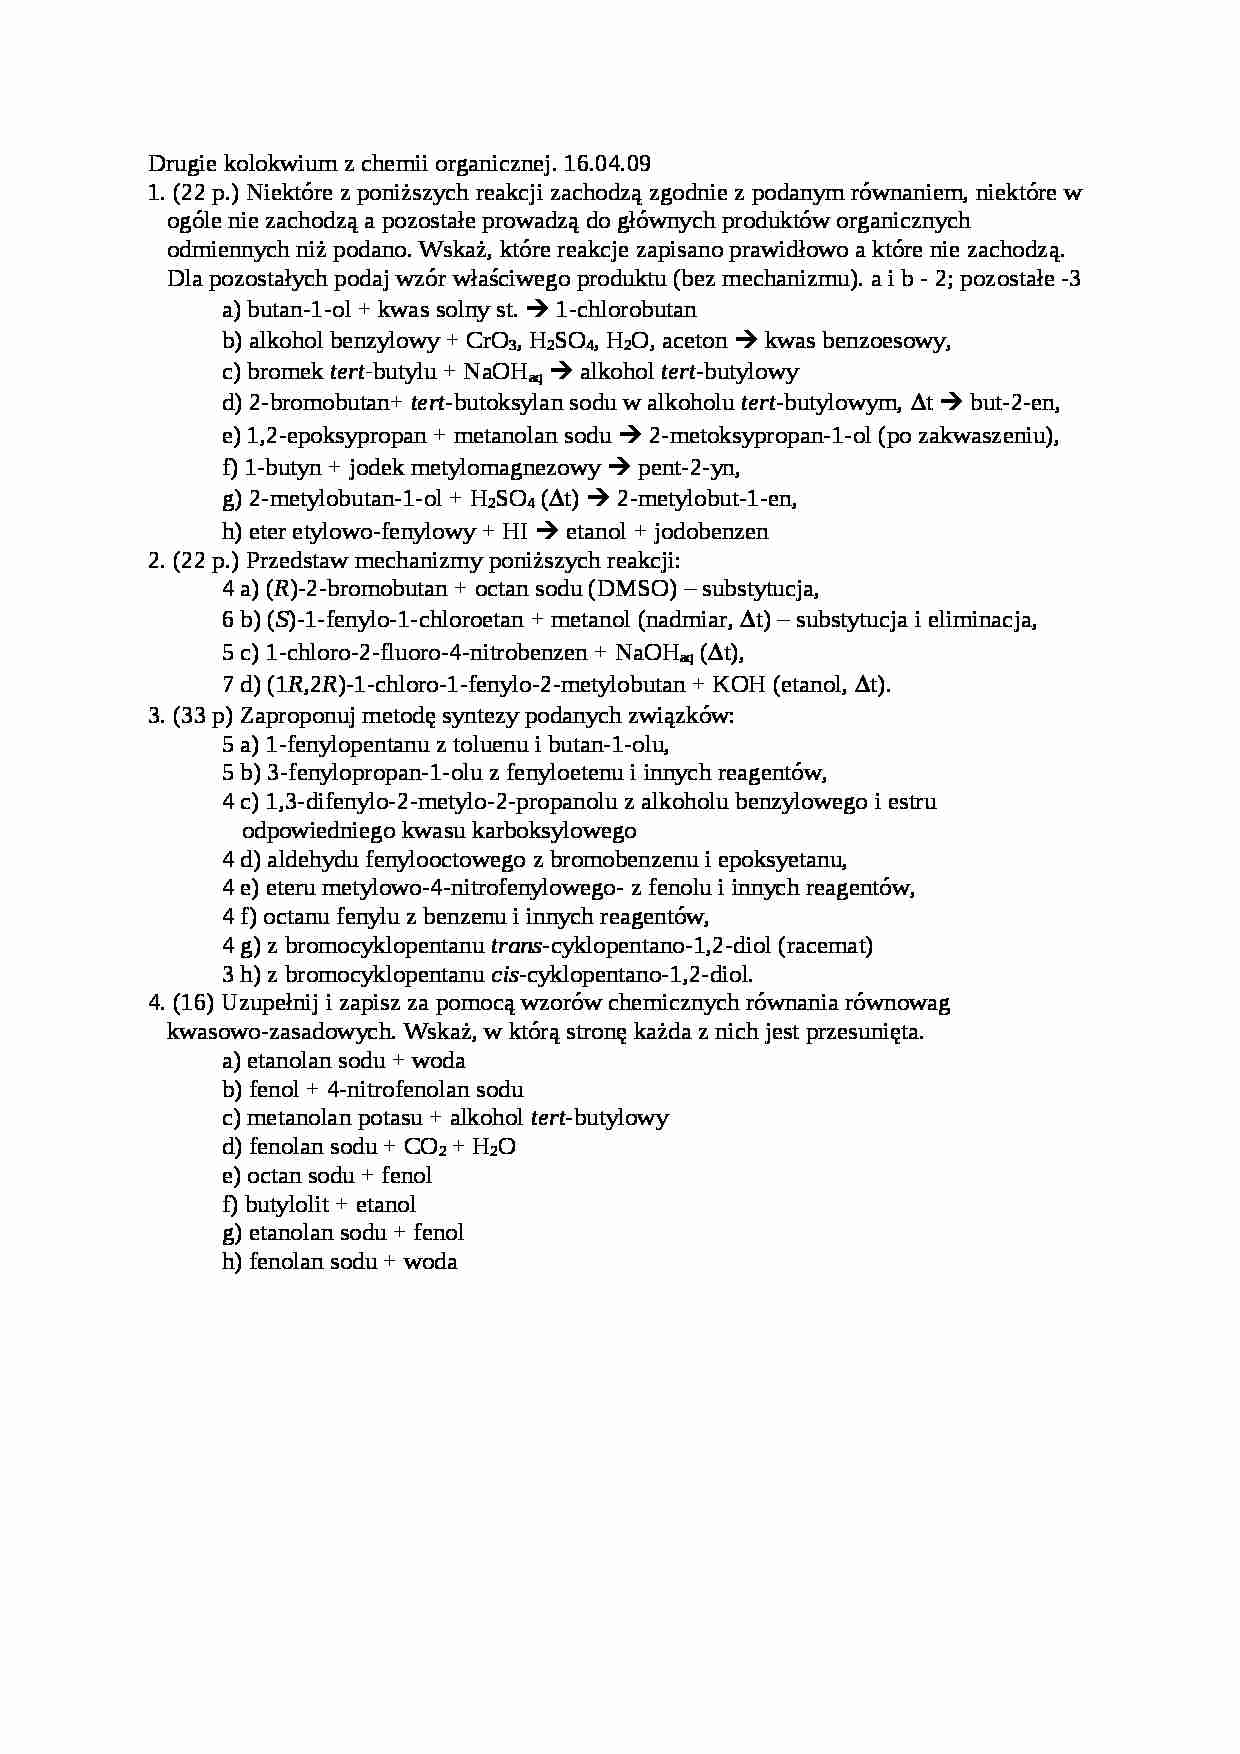 Chemia organiczna - kolokwium - strona 1